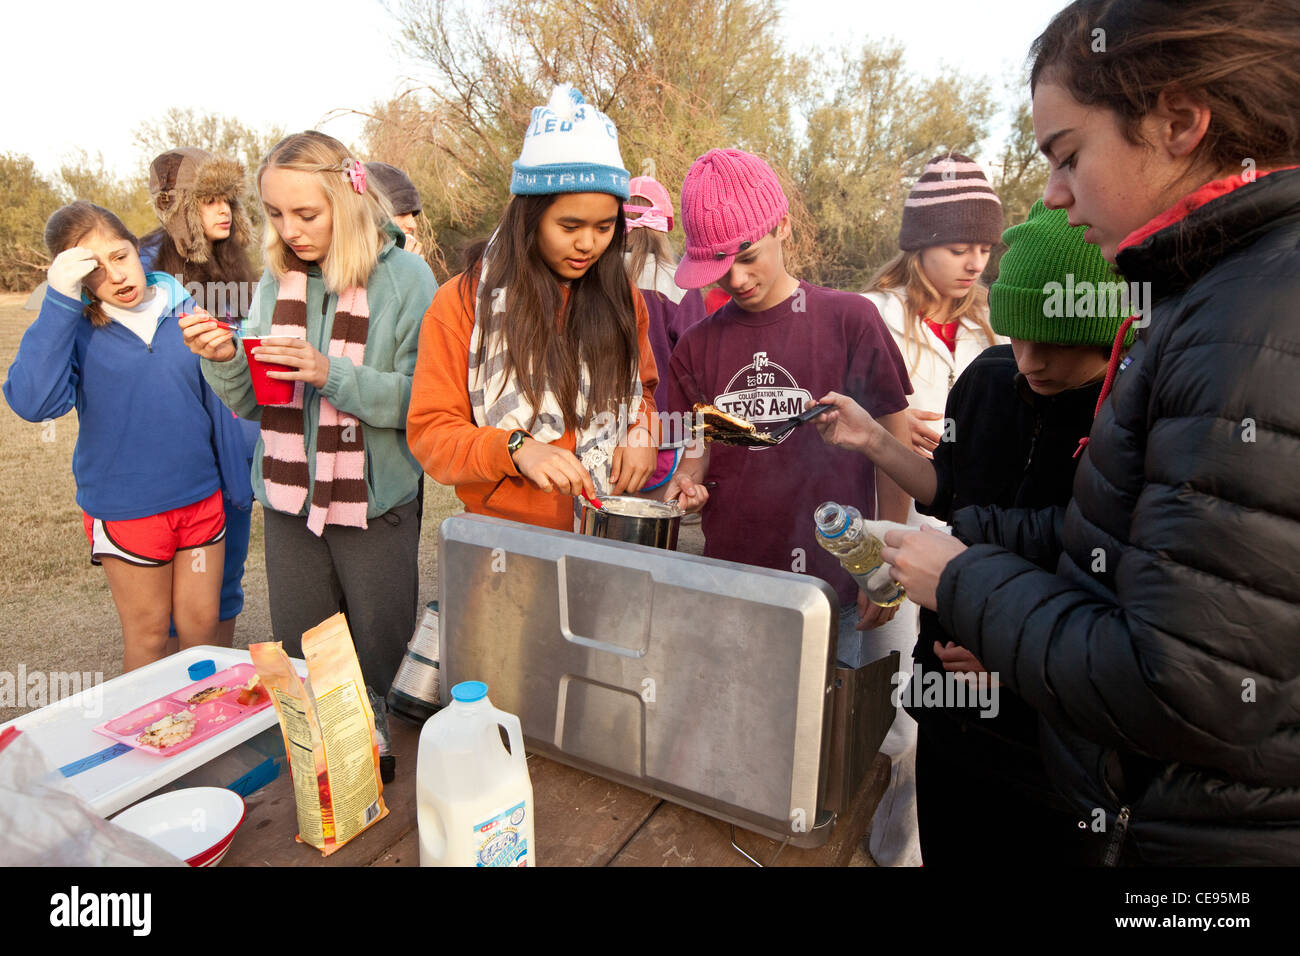 Mittelschule Klassenfahrt zum Big Bend National Park in Texas. Studenten kochen Frühstück mit Pfannkuchen in einem camp Stil Herd Stockfoto